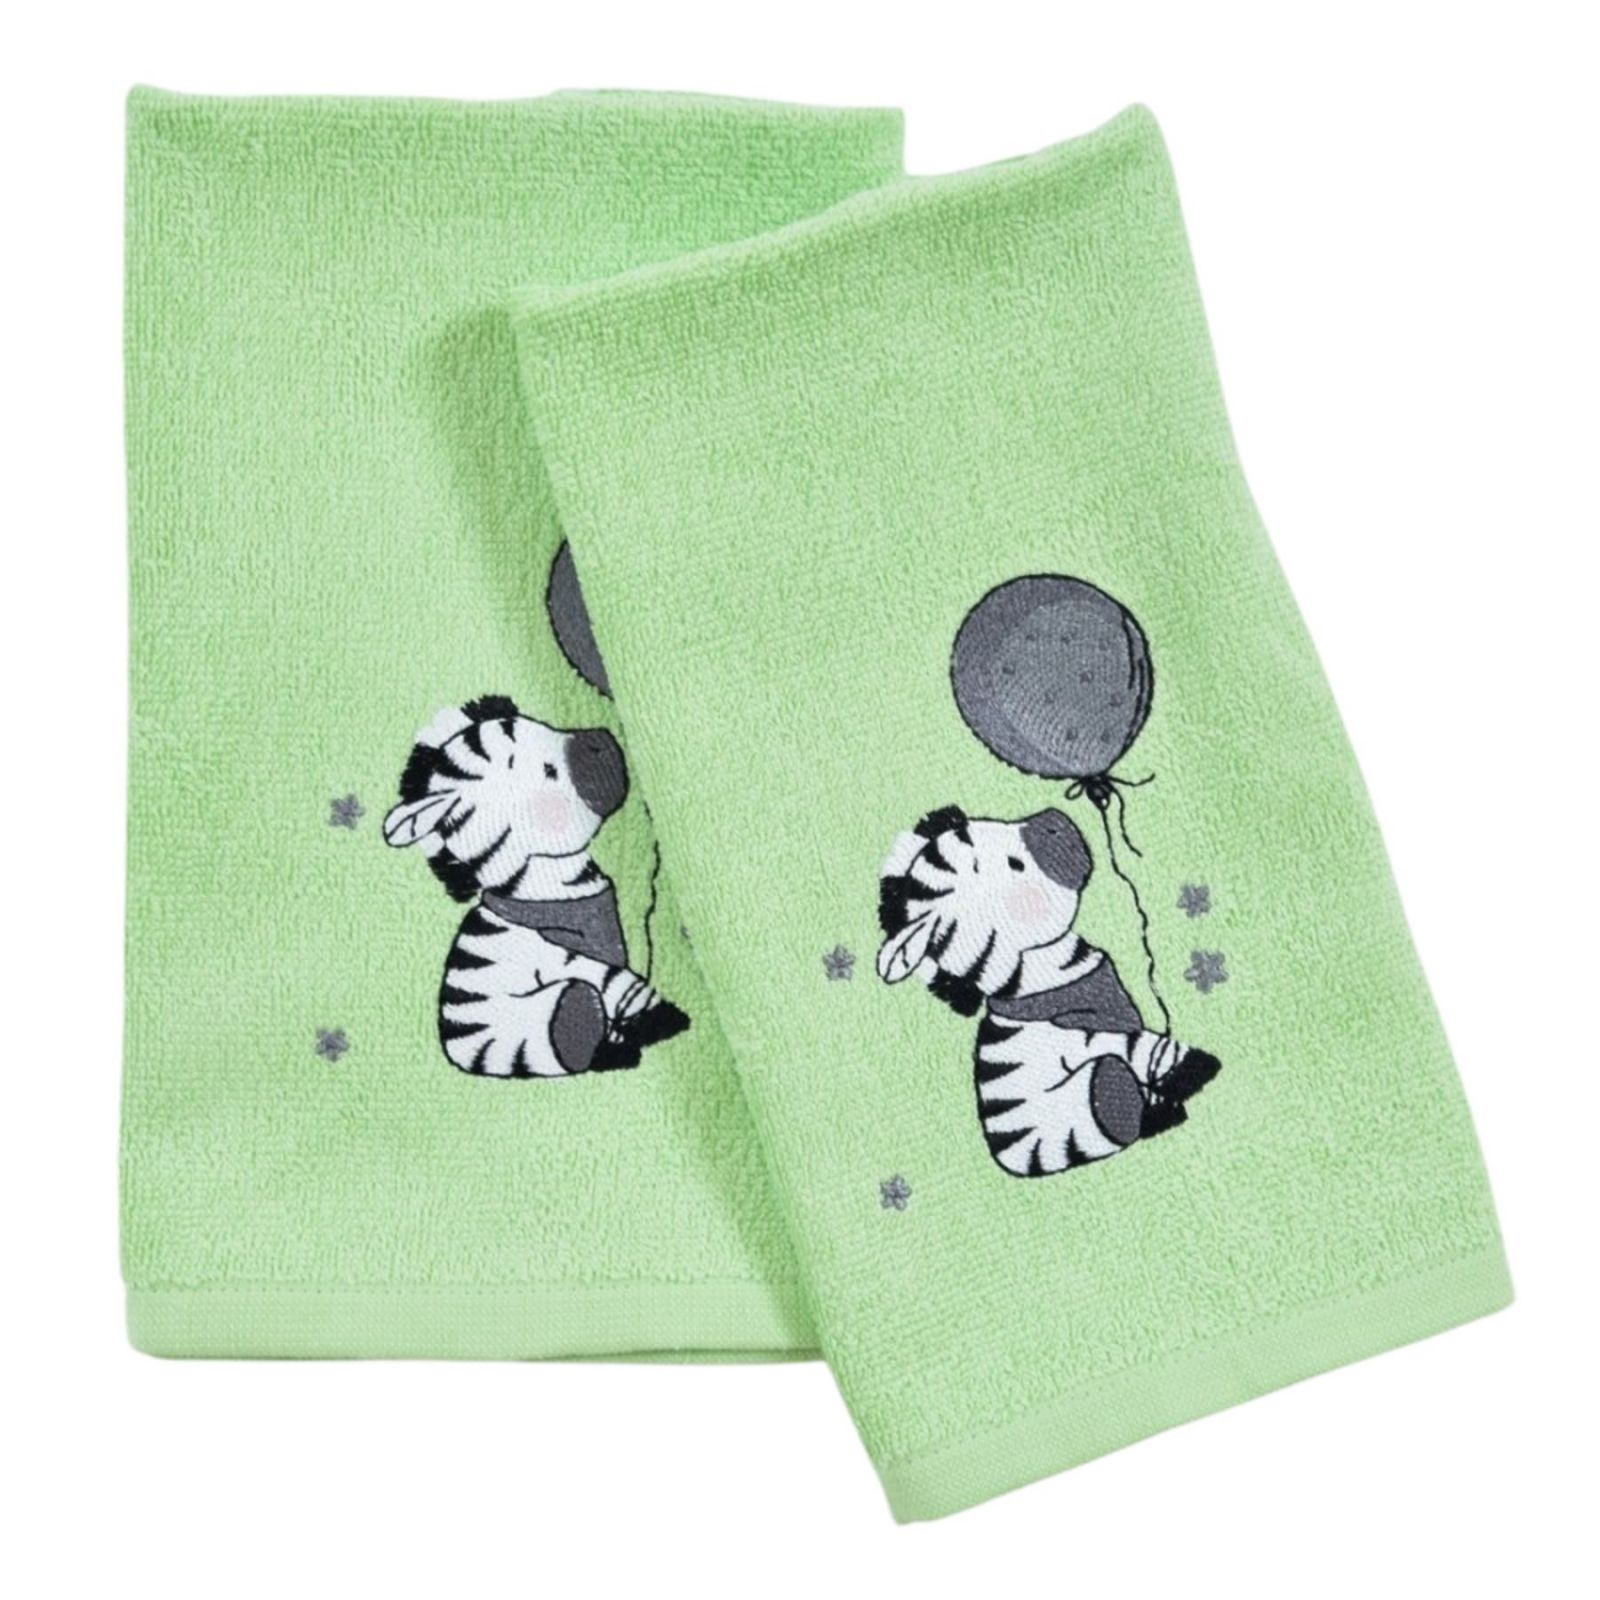 Dětský ručník LILI zelený Praktik